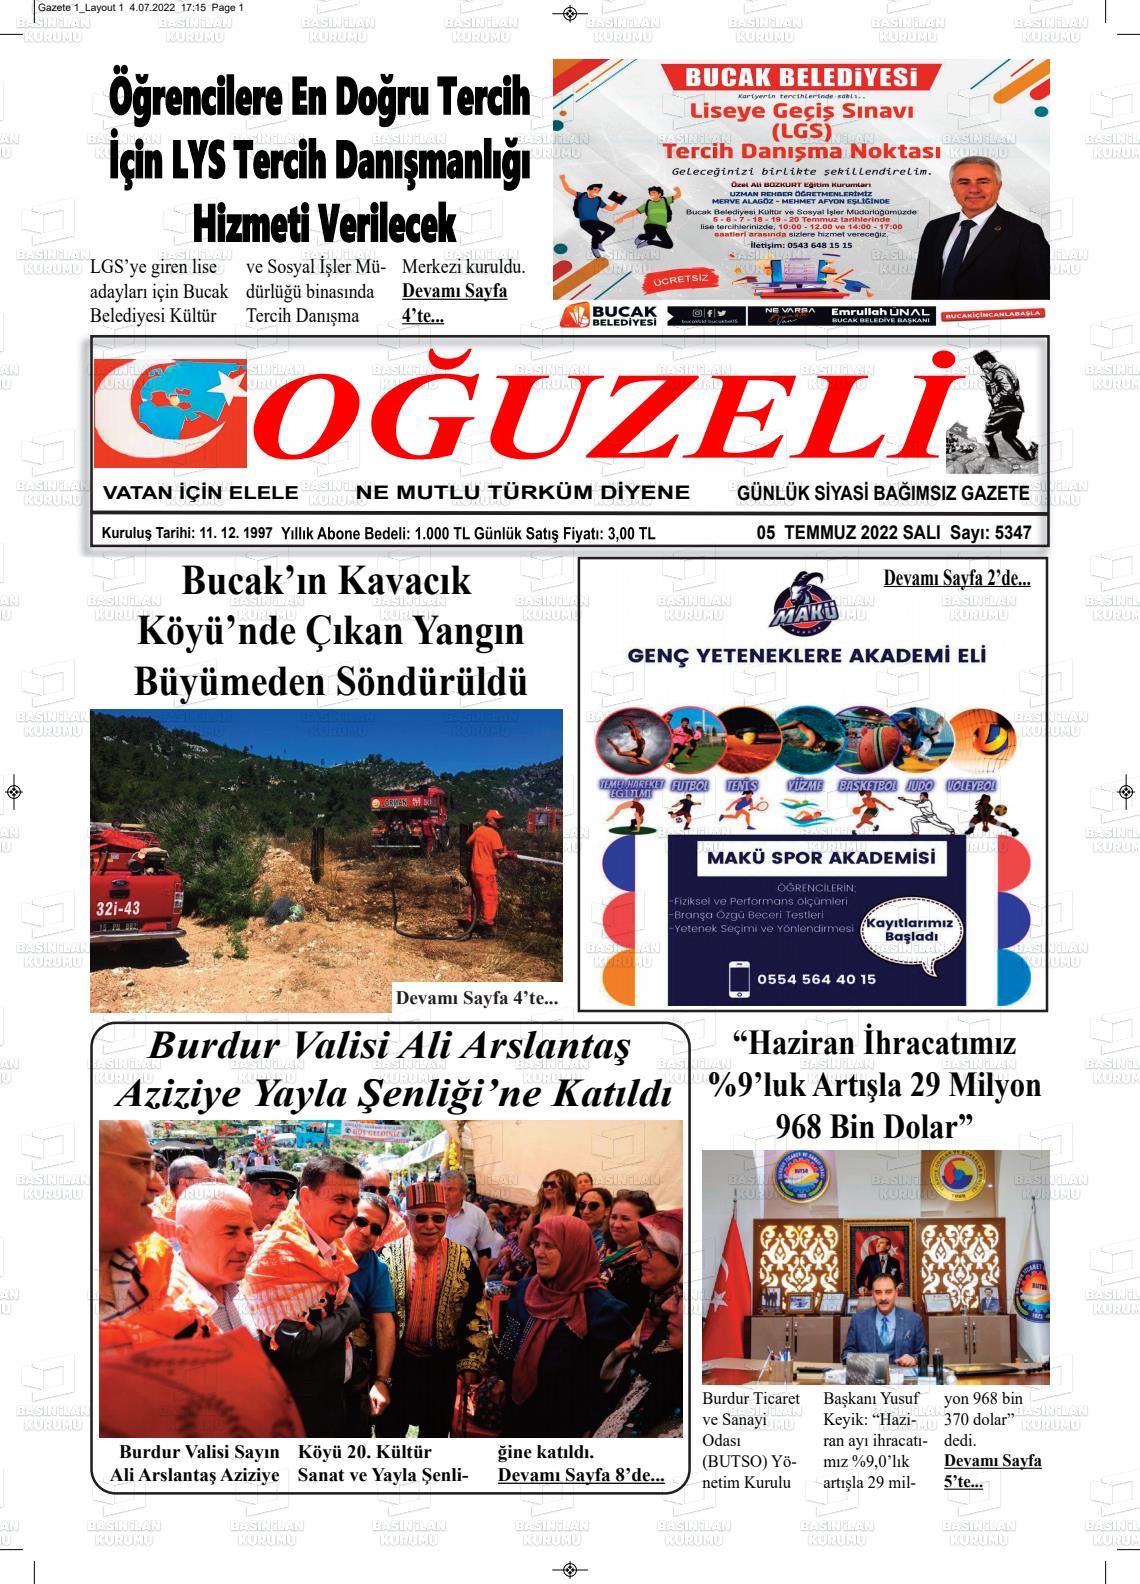 05 Temmuz 2022 Oğuzeli Gazete Manşeti